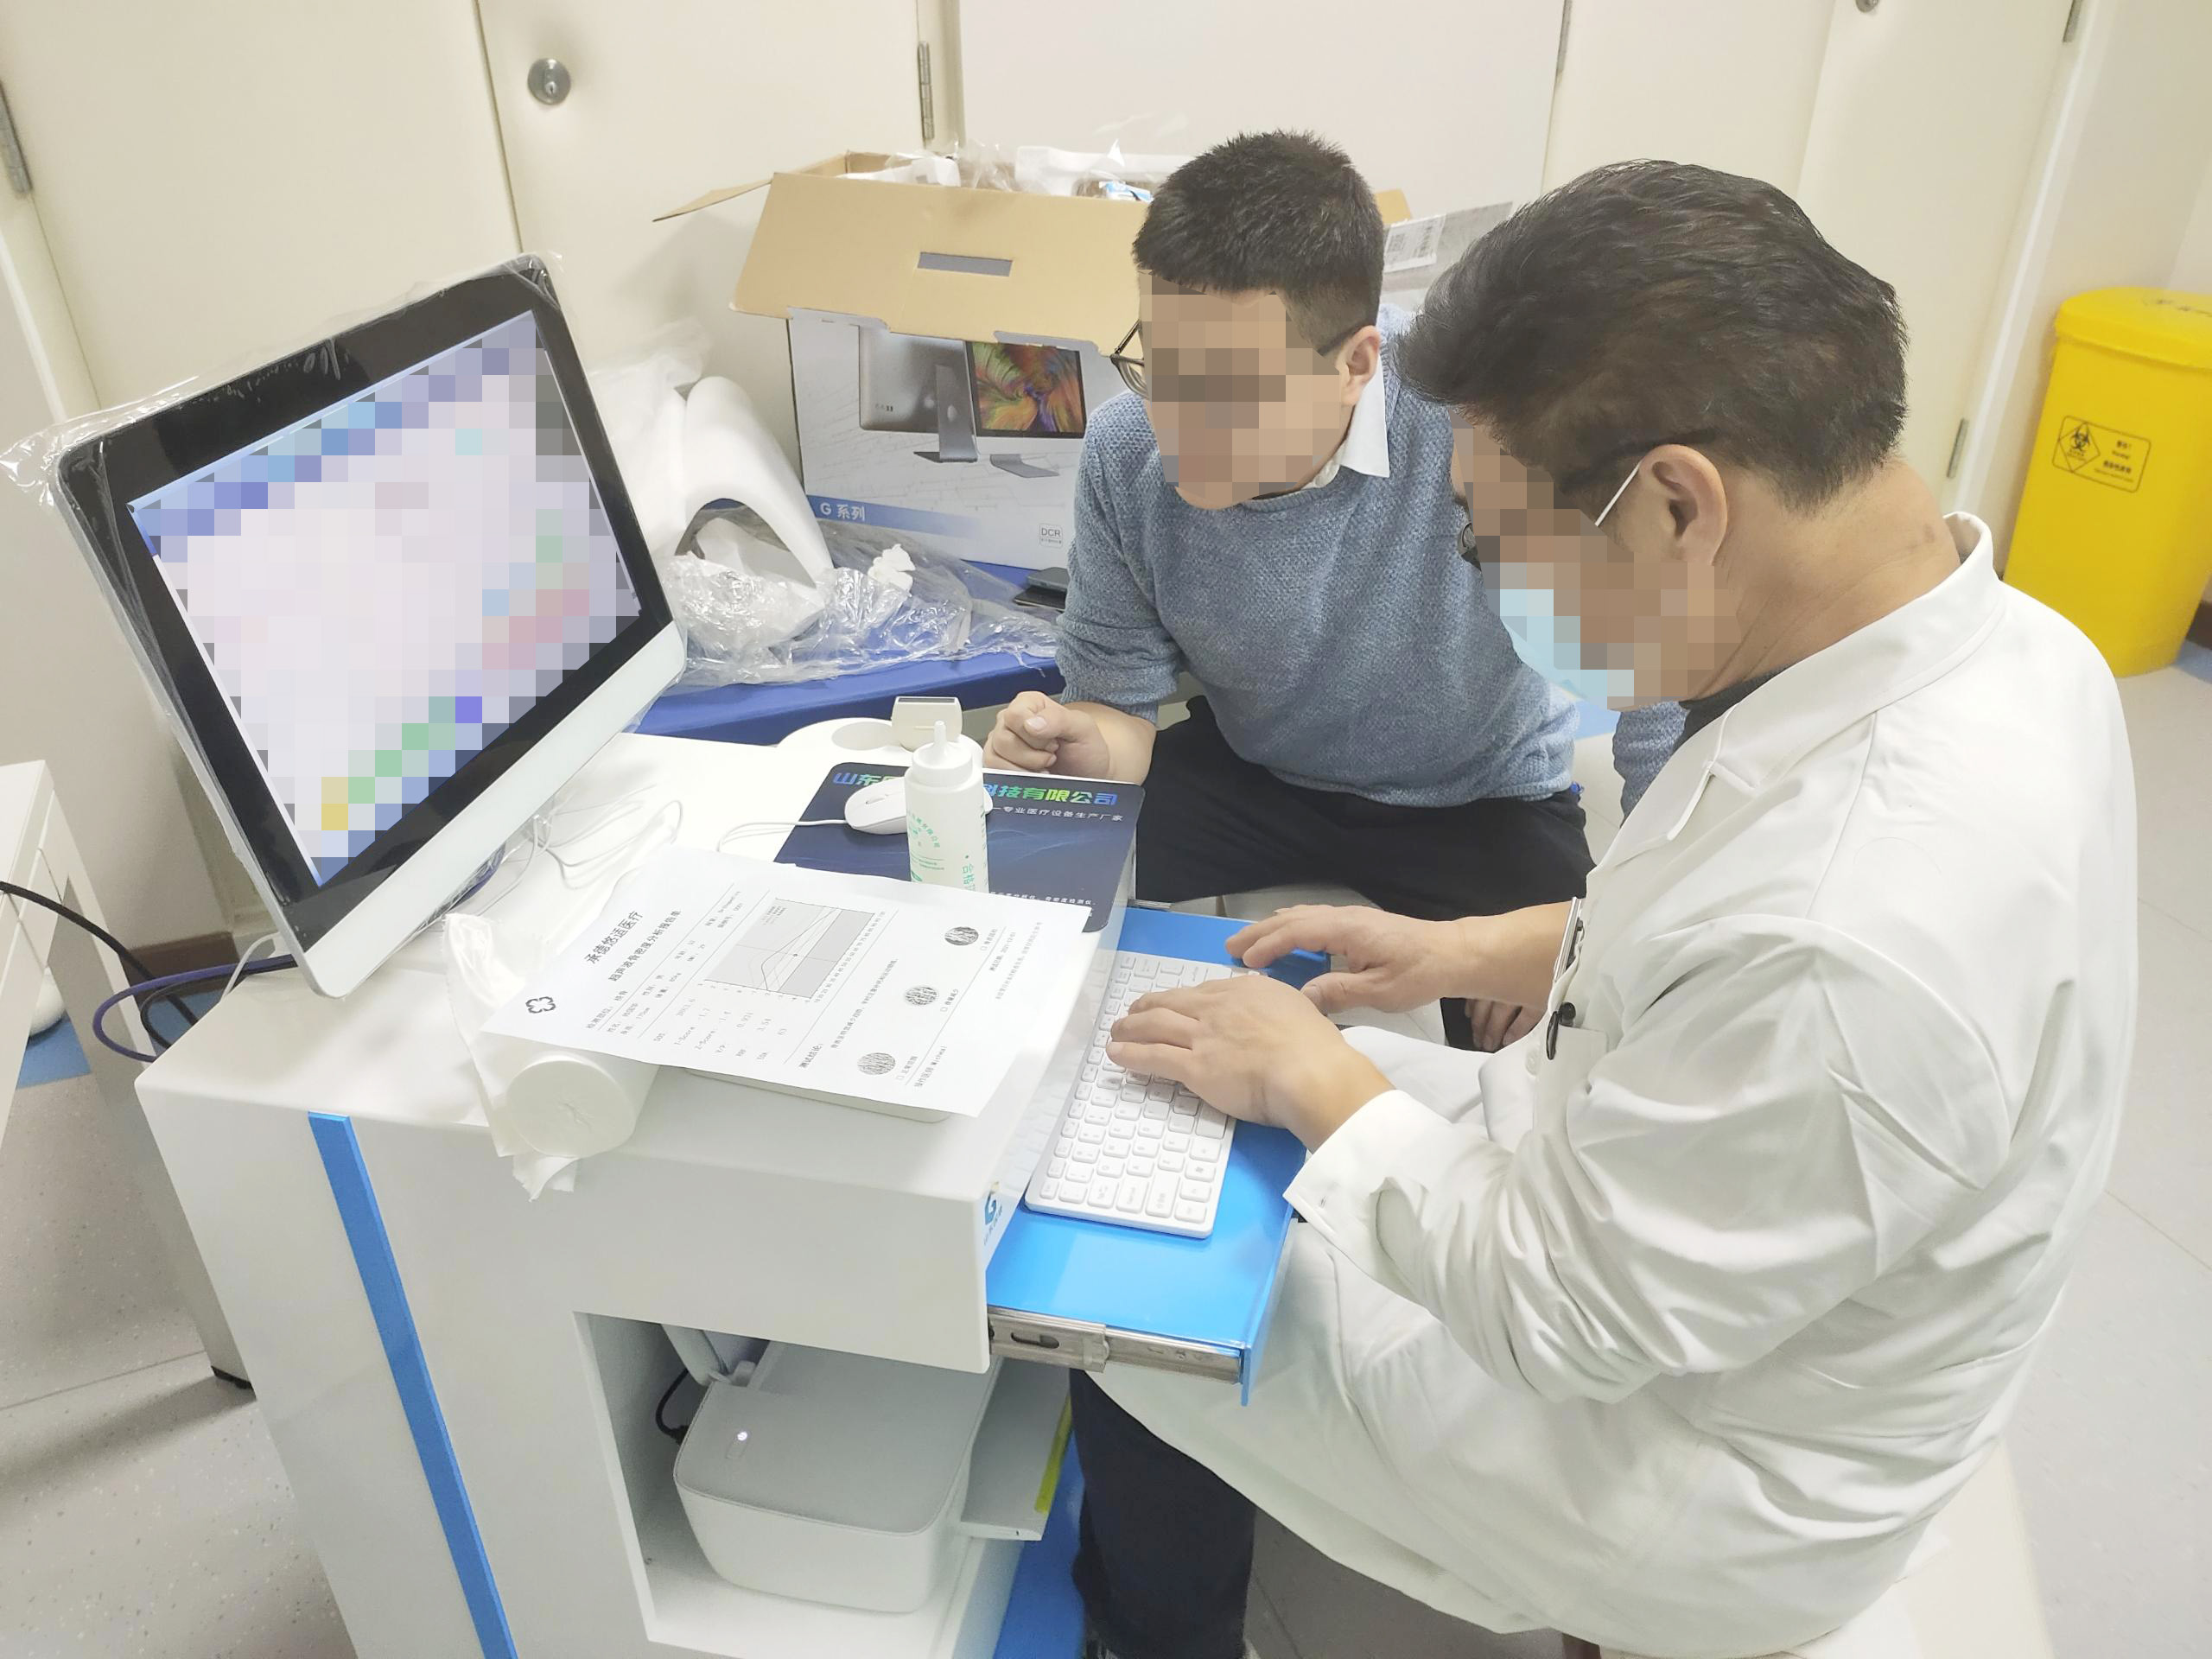 5月超声骨密度分析仪器在河北省承德市承德悠适医疗 安装投入使用中